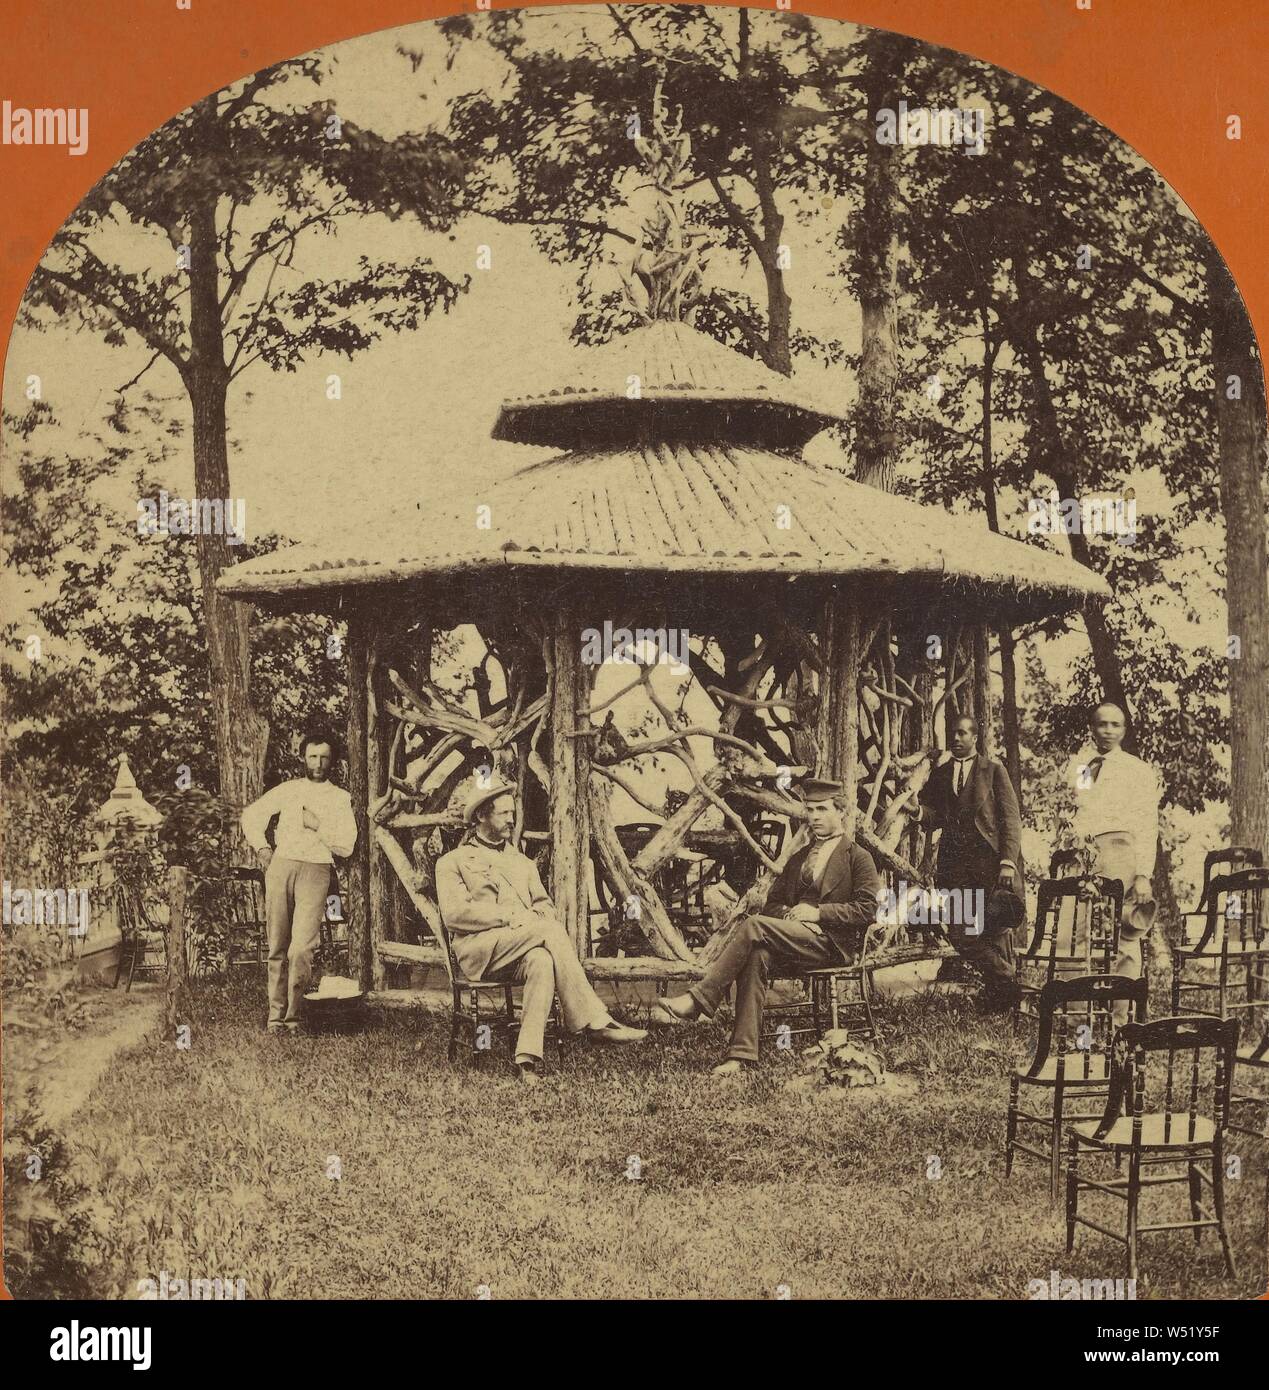 Groupe d'hommes, noir et blanc, à un belvédère (Saratoga Springs, NY), Baker & Record (États-Unis, actif 1870), Saratoga Springs, New York, United States, vers 1875, à l'albumine argentique Banque D'Images